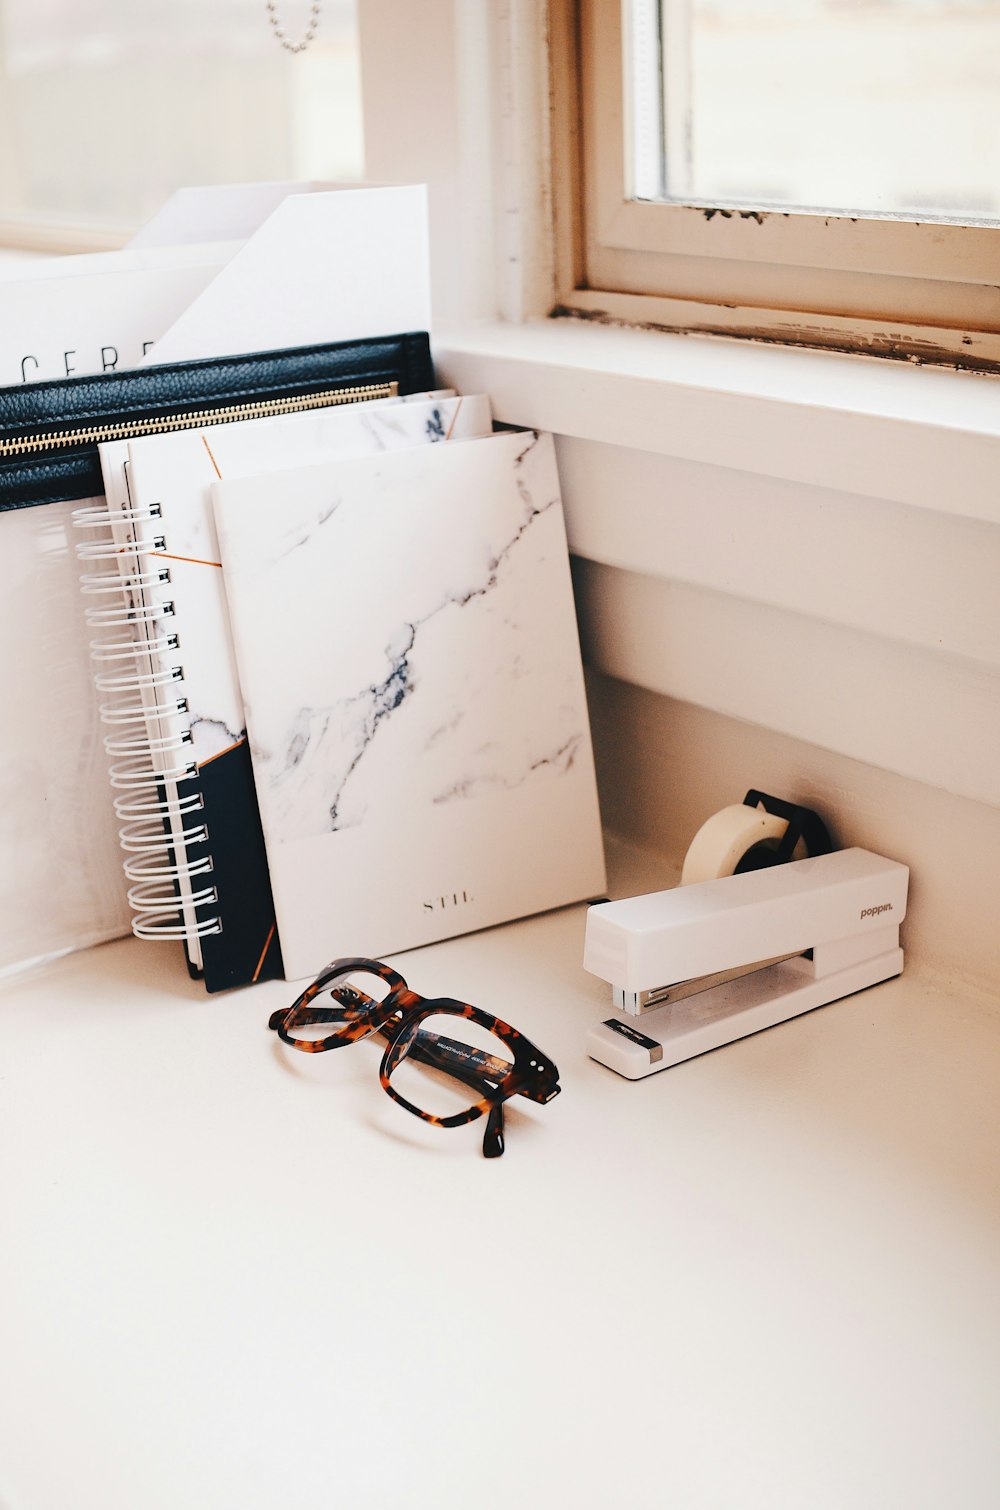 white stapler and eyeglasses with brown tortoiseshell frame on desk